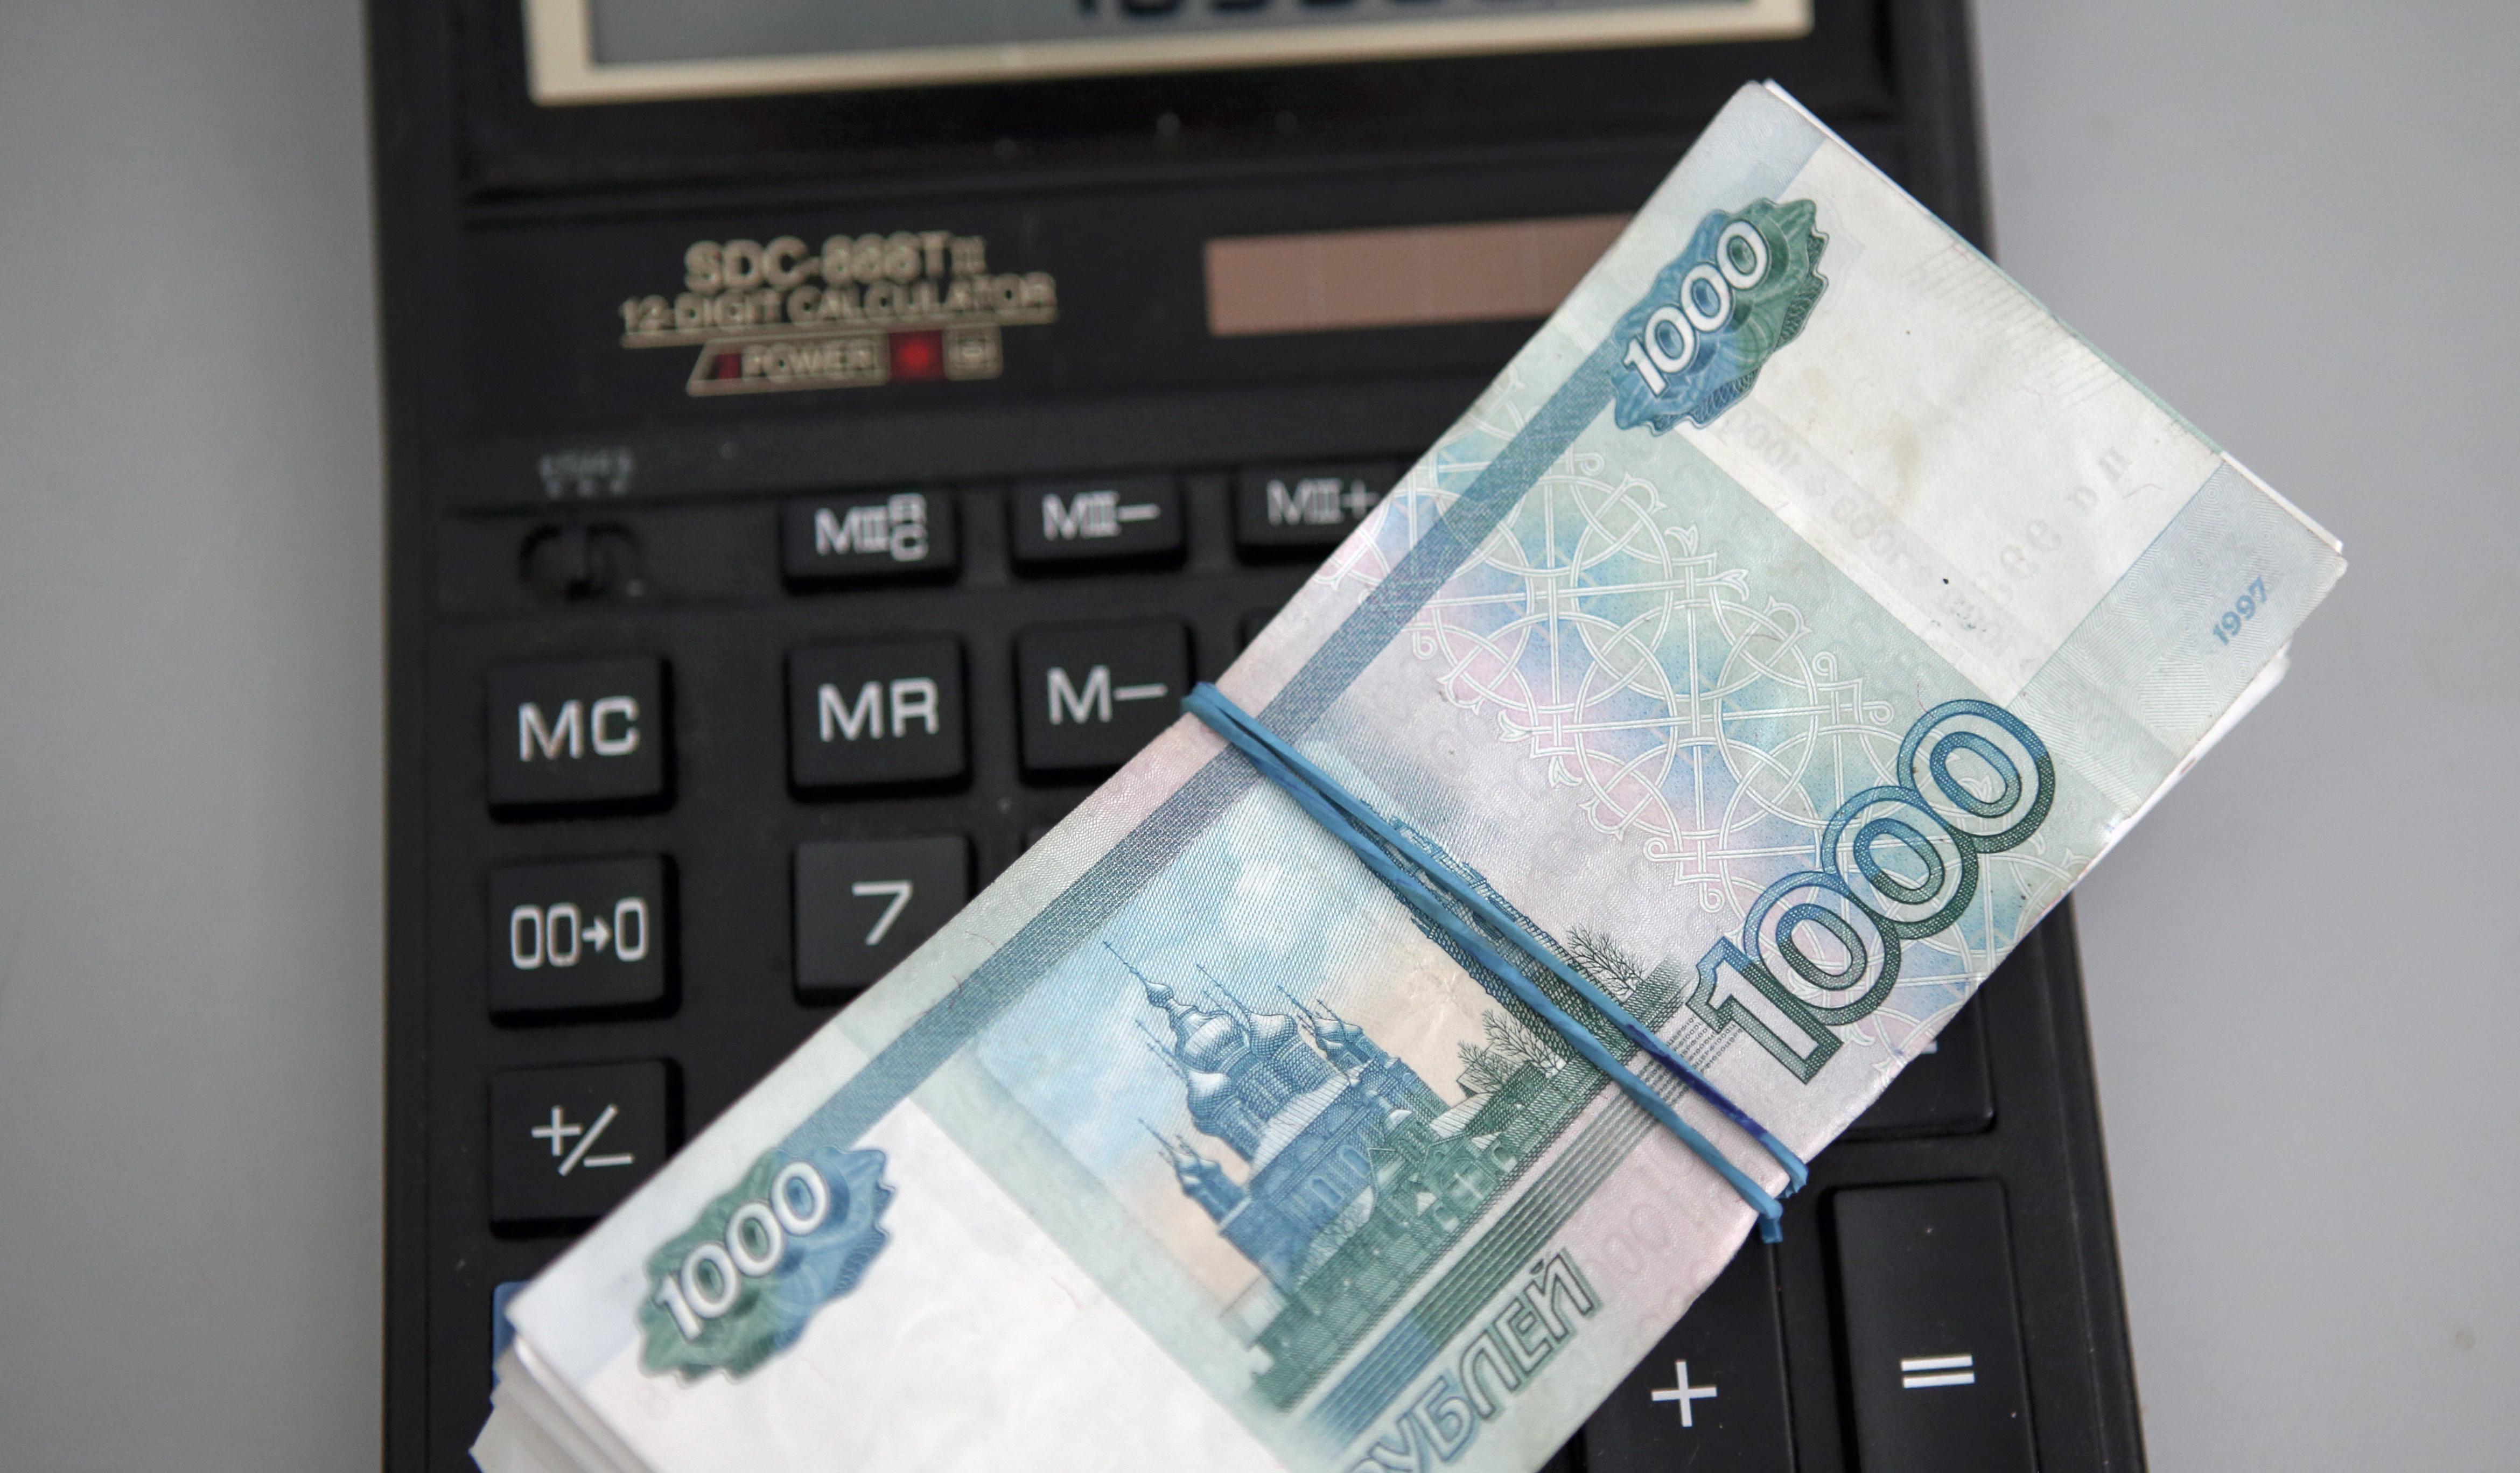 Североосетинская полиция выявила аферу при получении 10 млн рублей гранта на создание конефермы